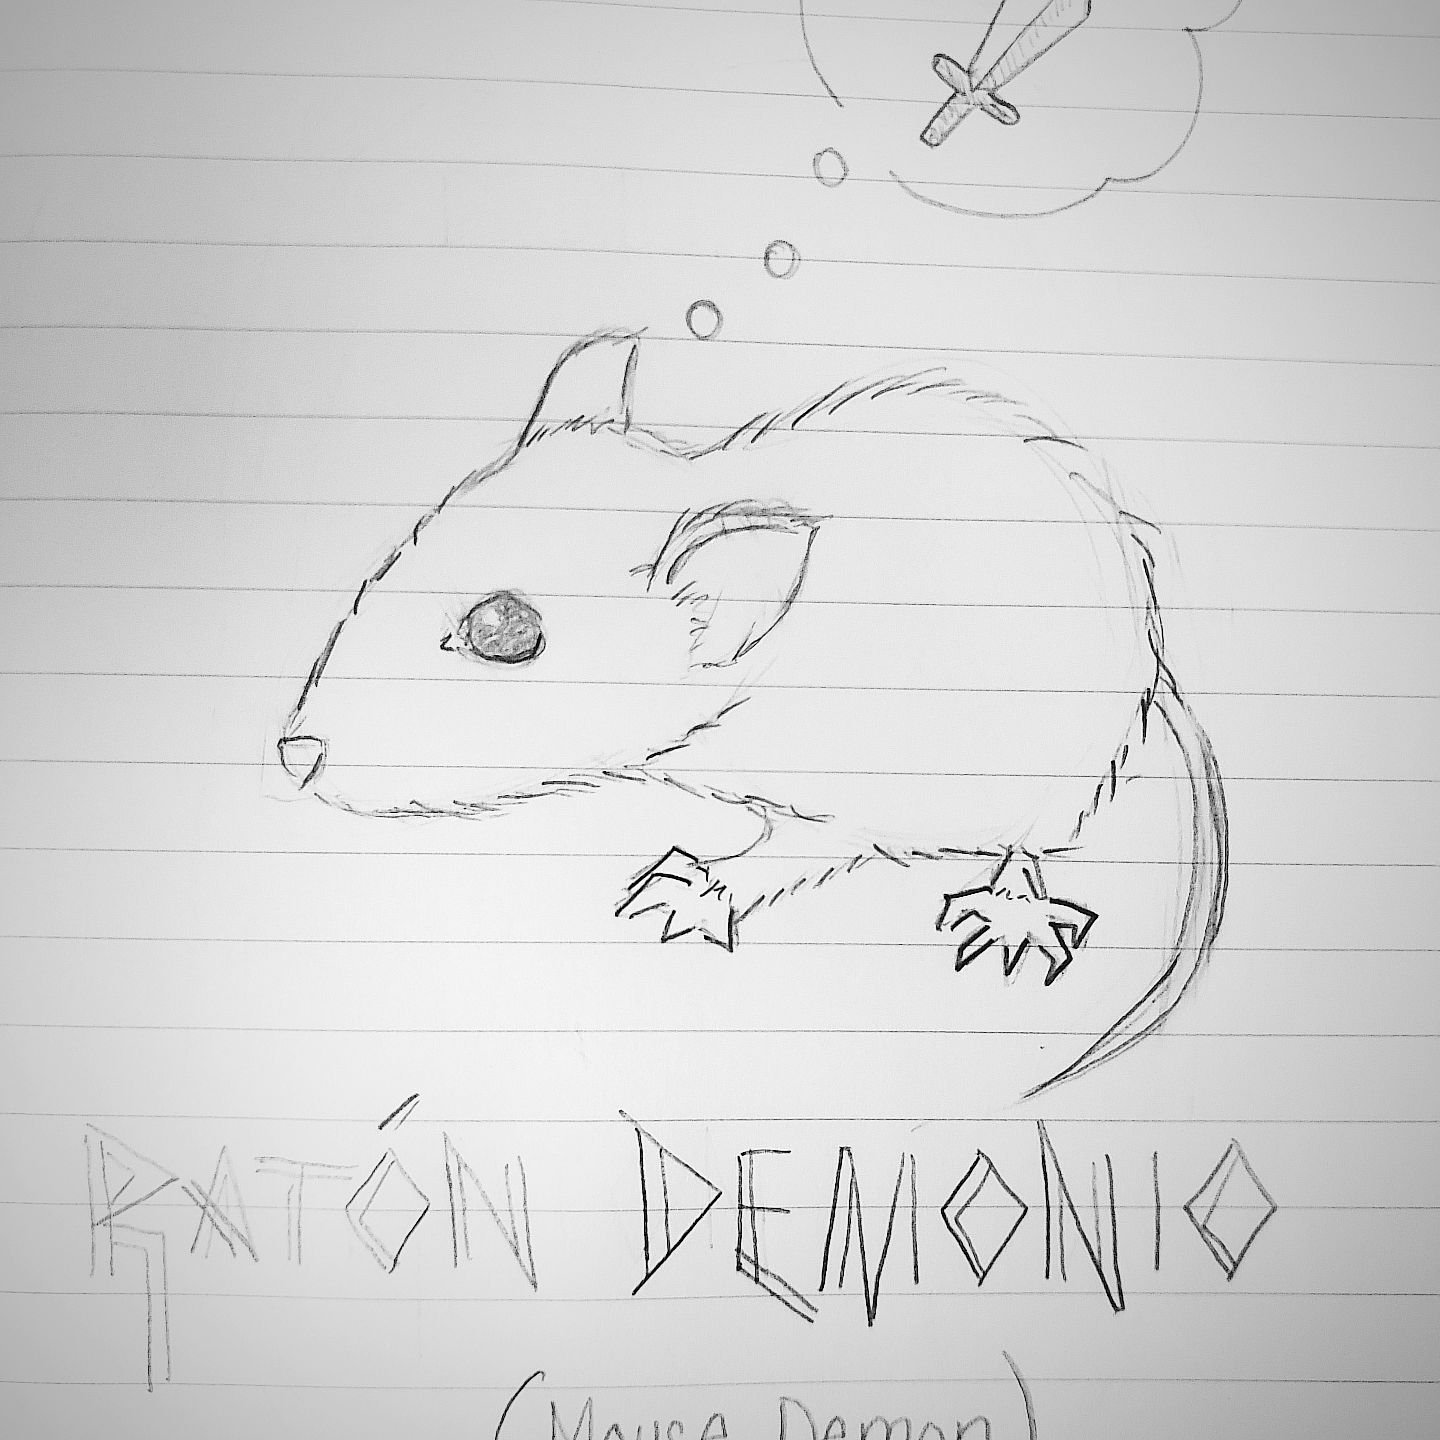 Circa 2016? Mouse demon. 🐁🐀
.
.
.
#kelprabbit #mouse #demon #sketch #drawing #fun